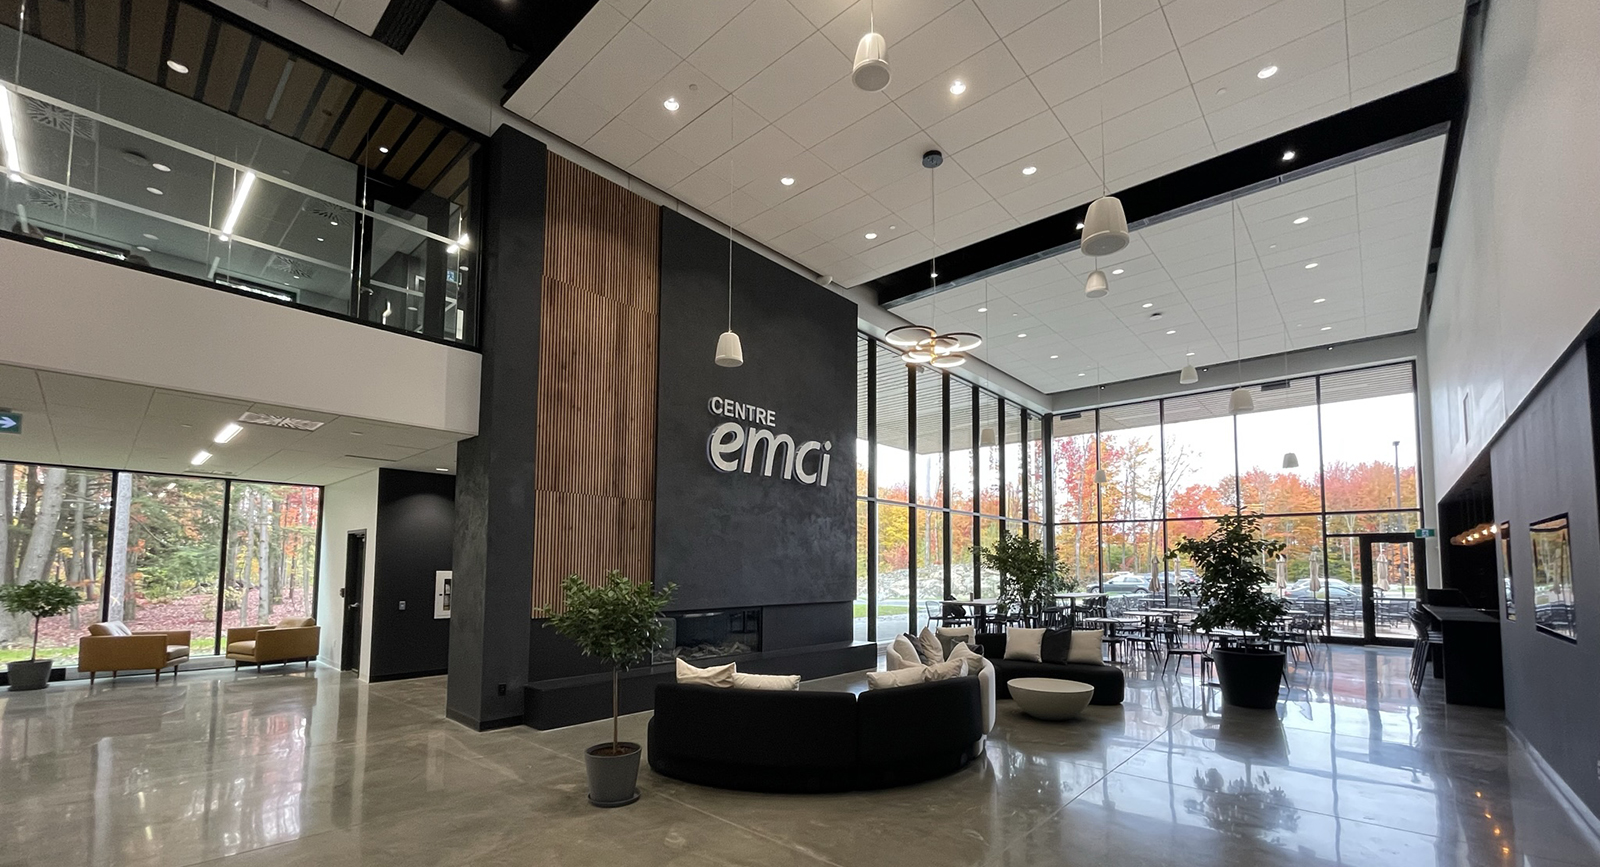 EMCI center